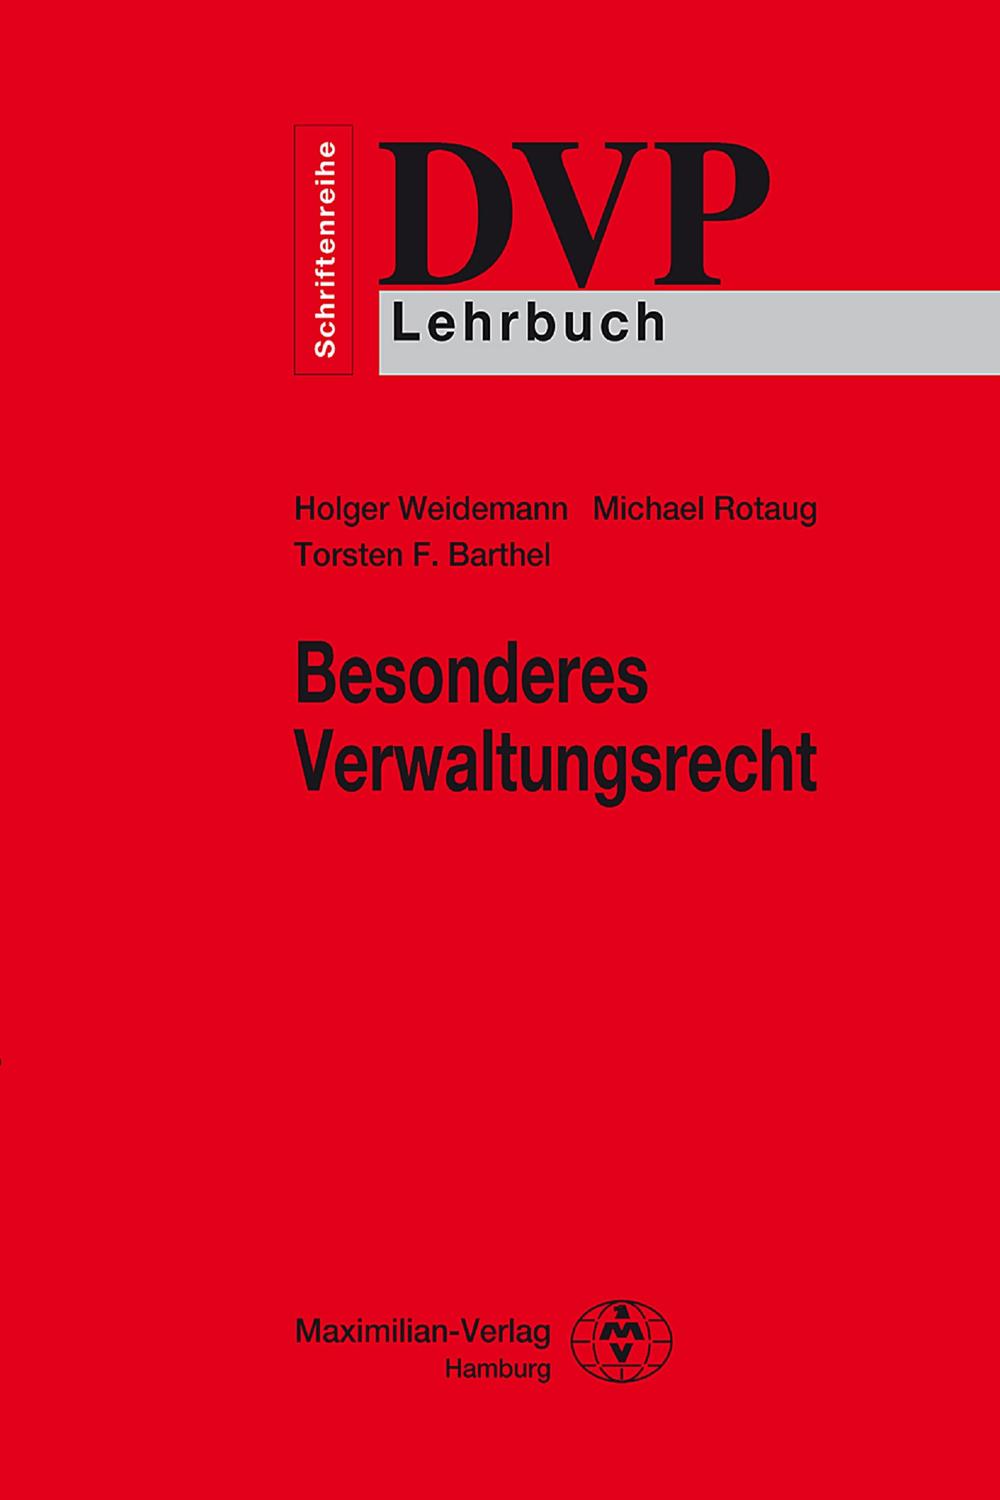 Besonderes Verwaltungsrecht - Michael Rotaug, Holger Weidemann, Torsten F. Barthel,,